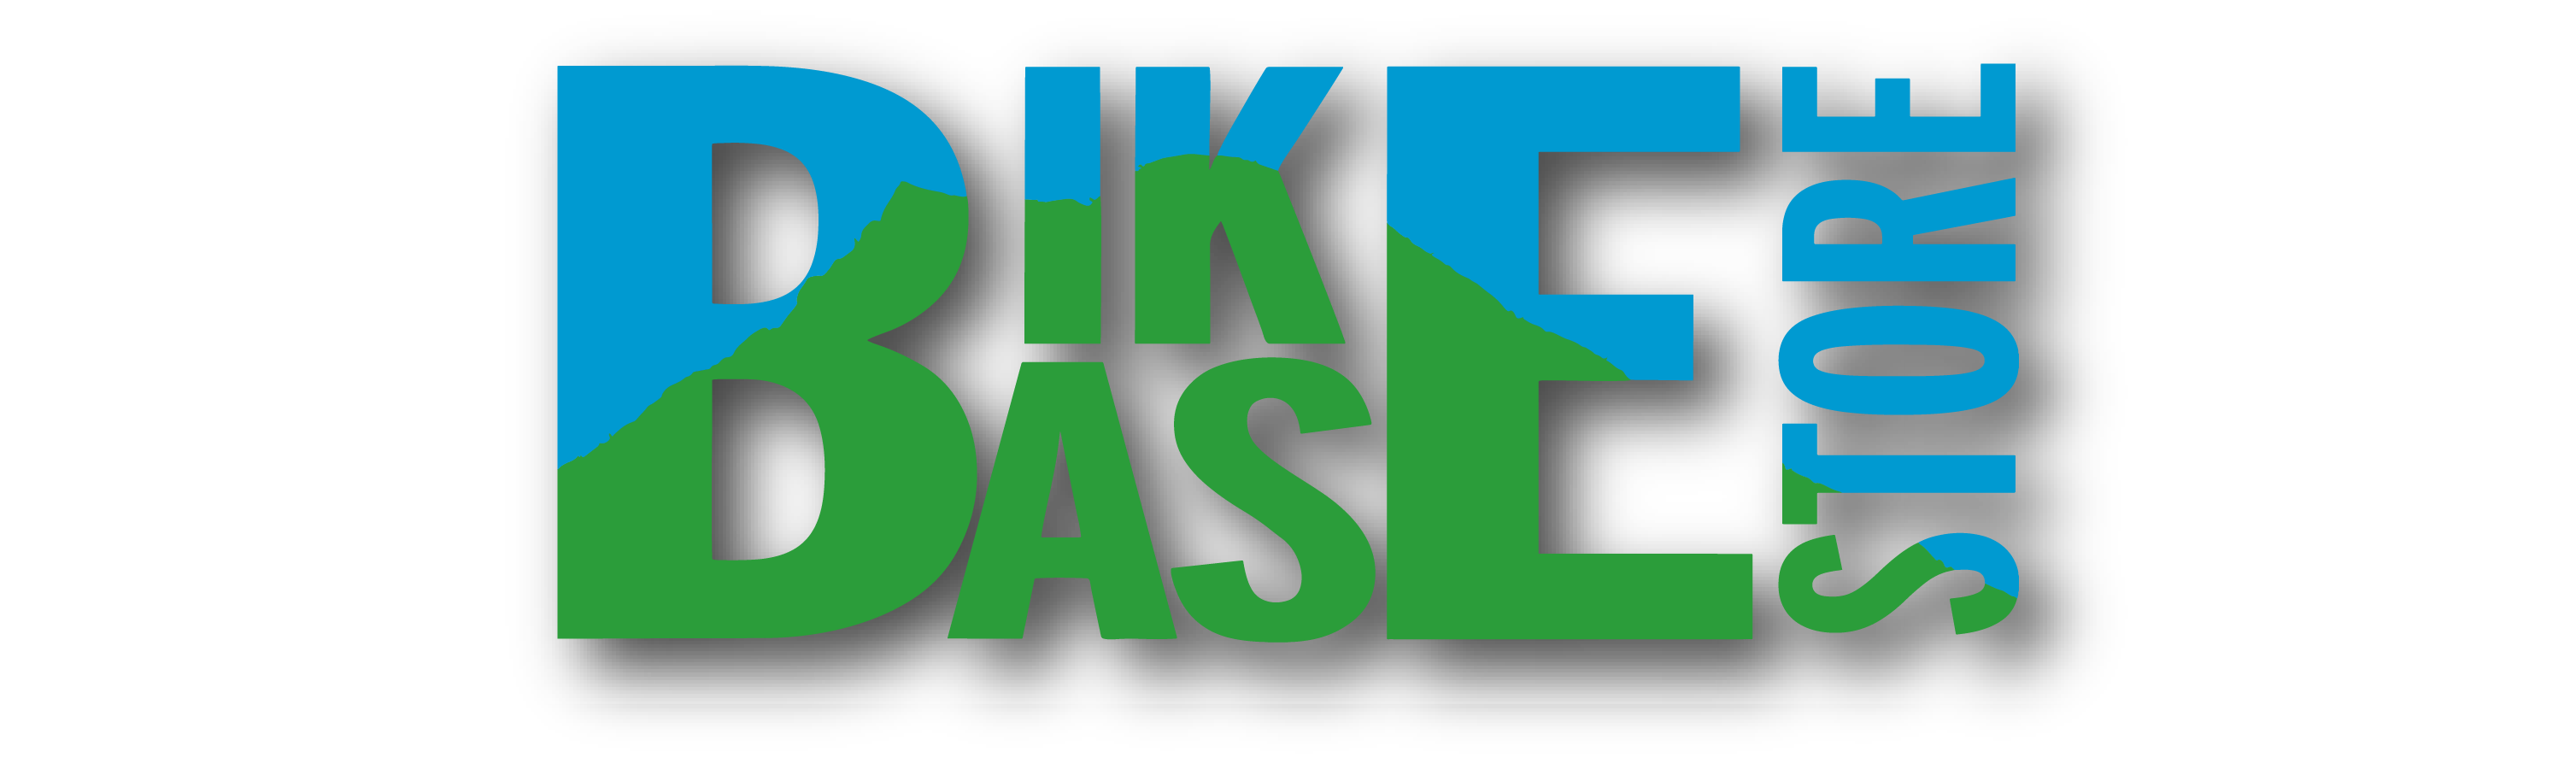 Logo Bike Base Store GmbH